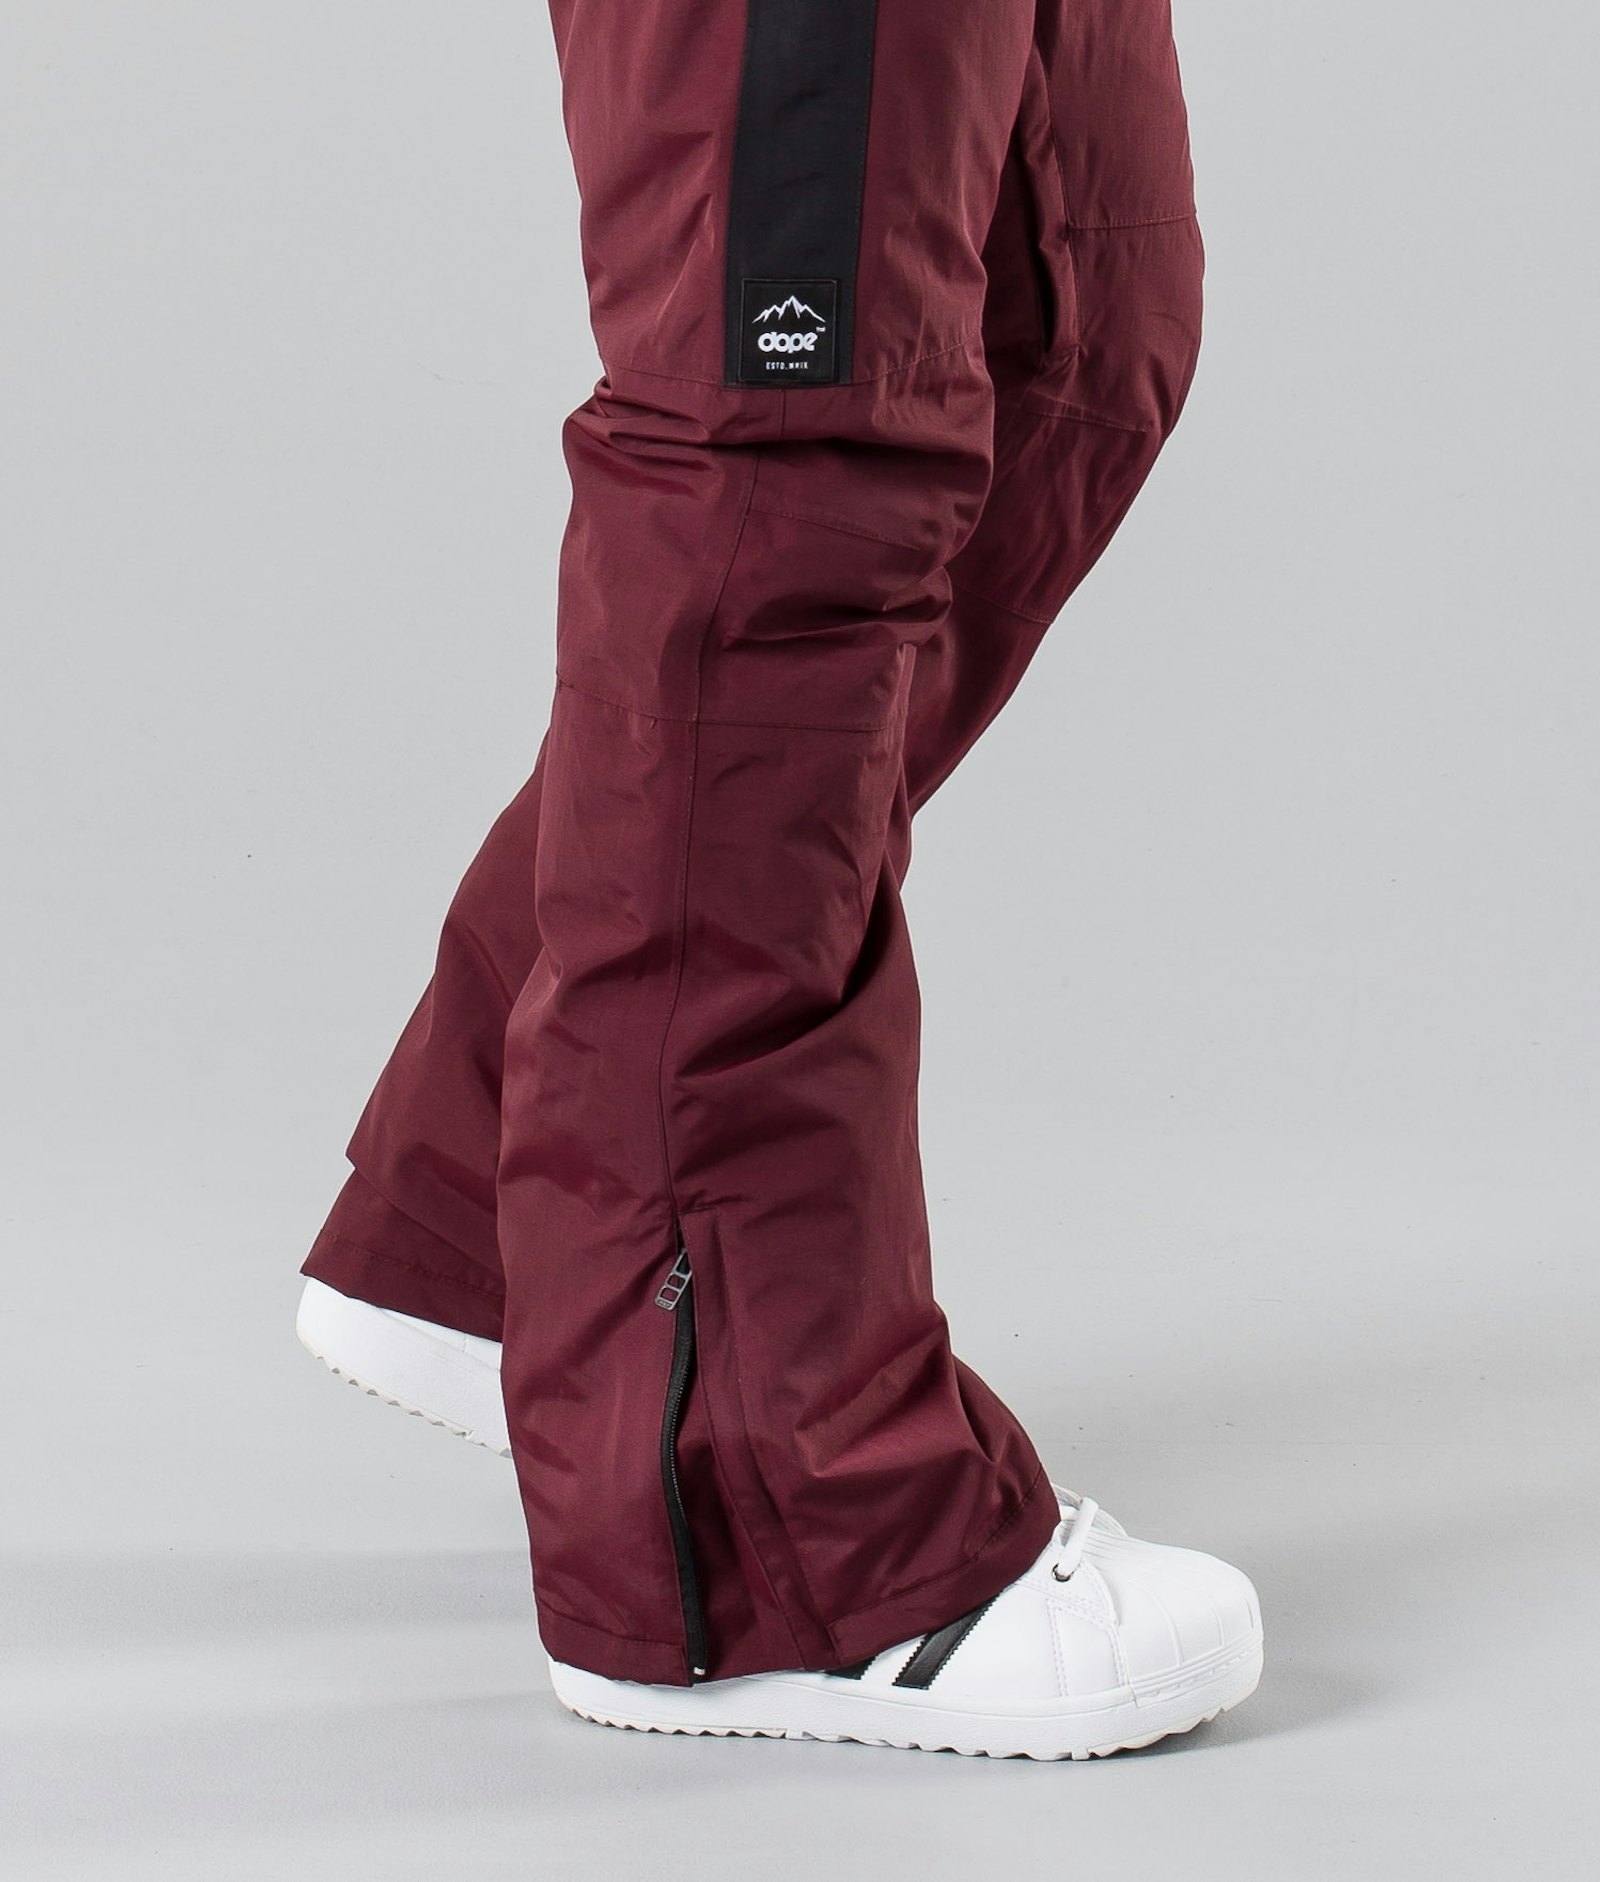 Dope Hoax II 2018 Spodnie Snowboardowe Mężczyźni Burgundy